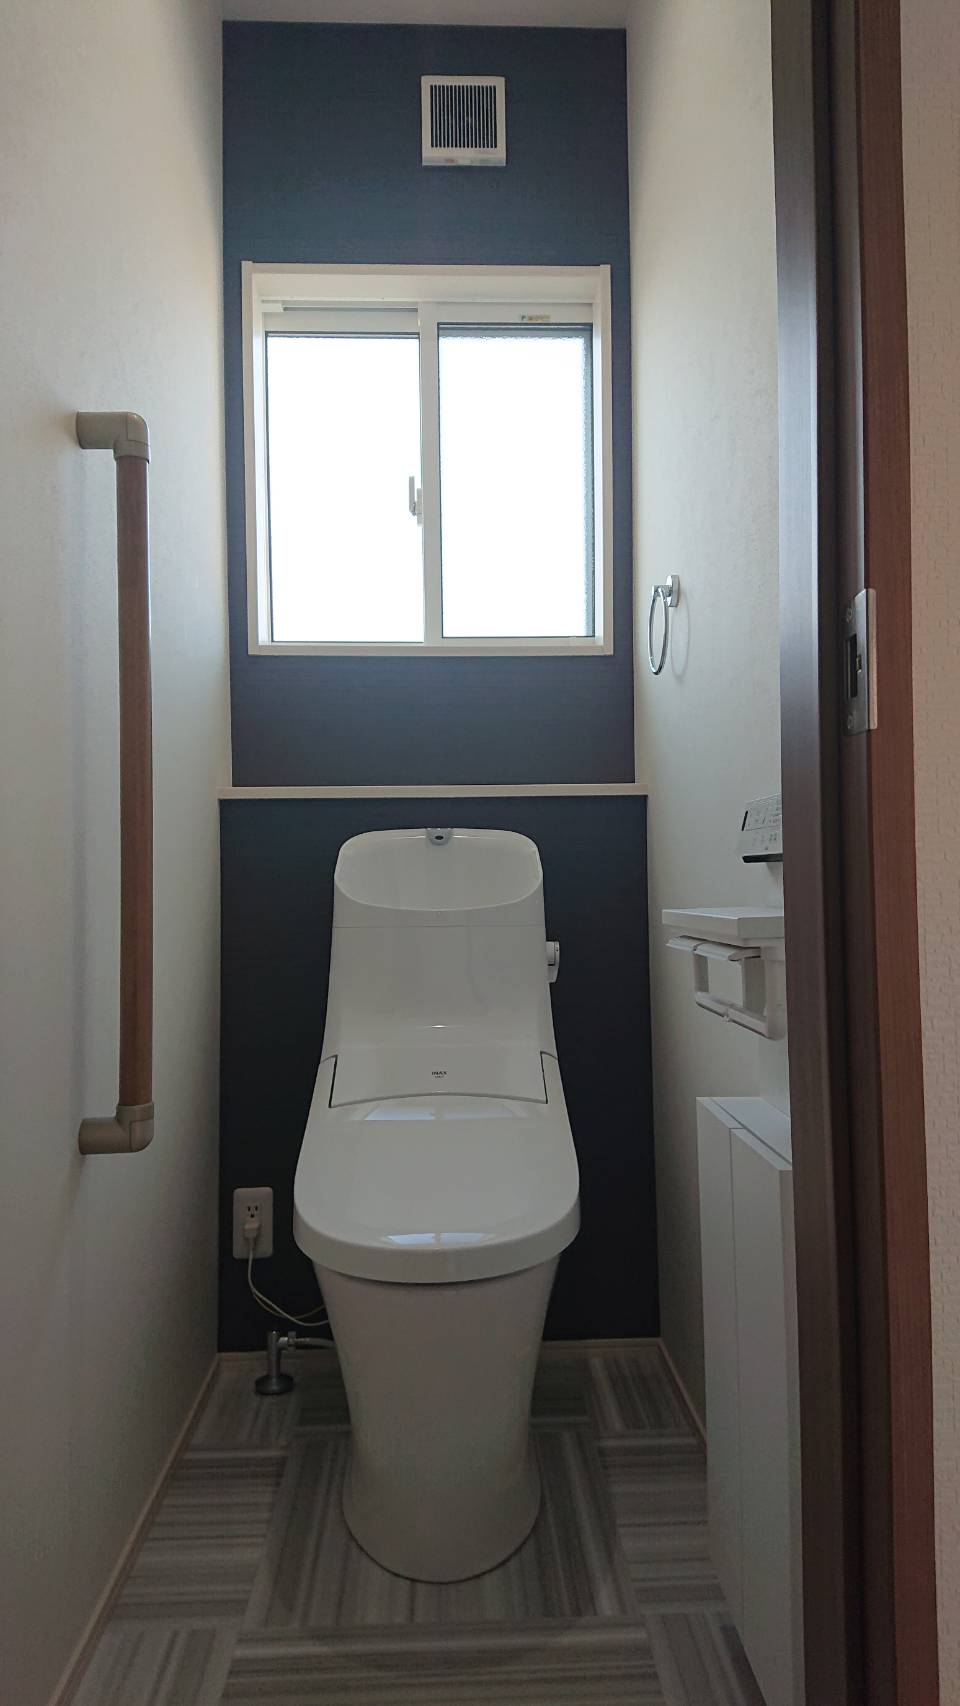 [最も欲しかった] 新築 トイレの壁紙 208109トイレの壁紙 新築